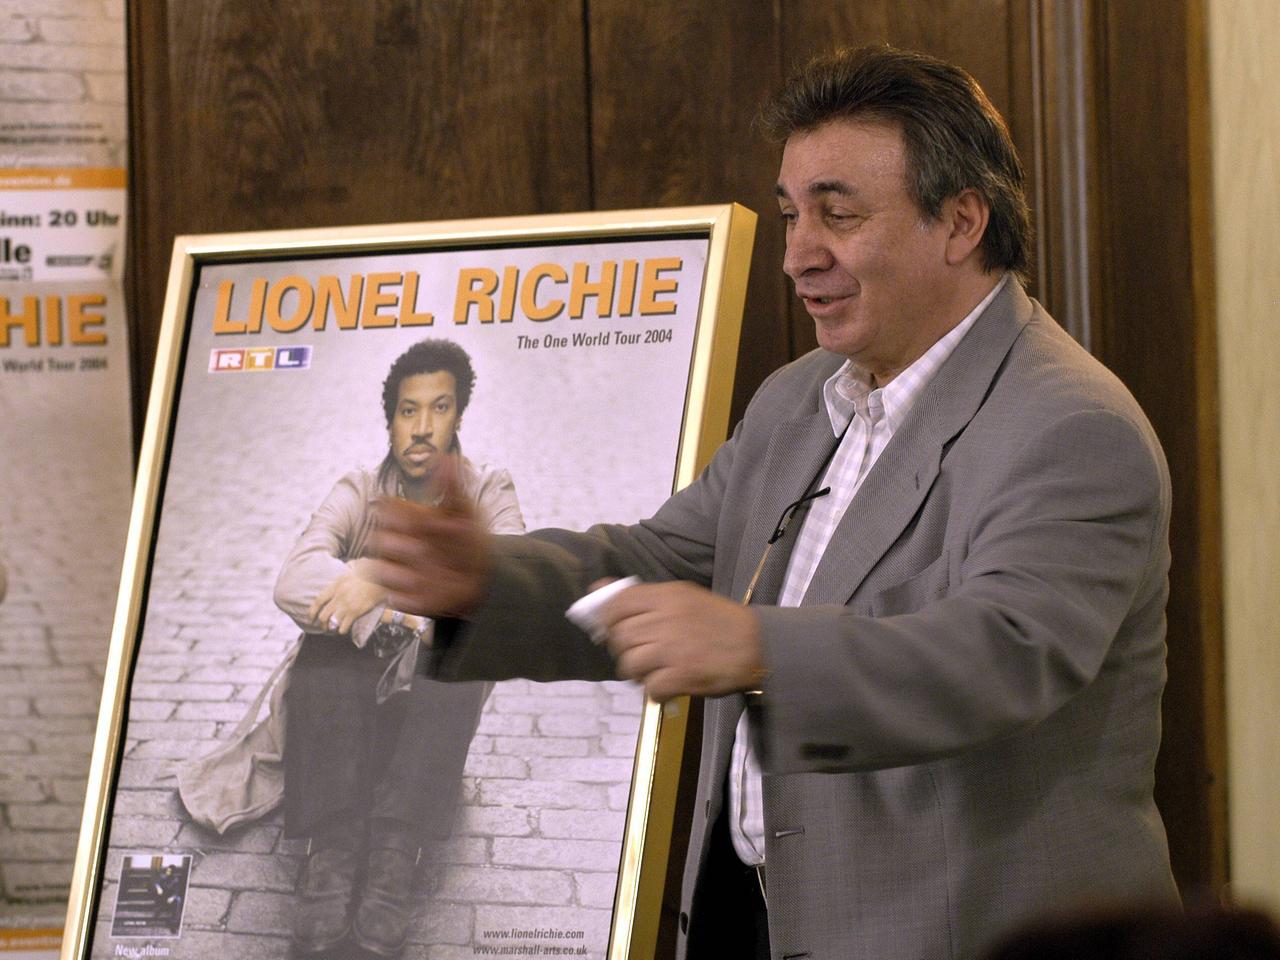 Marcel Avram hält ein Konzertplakat des Sängers Lionel Ritchie in die Kamera